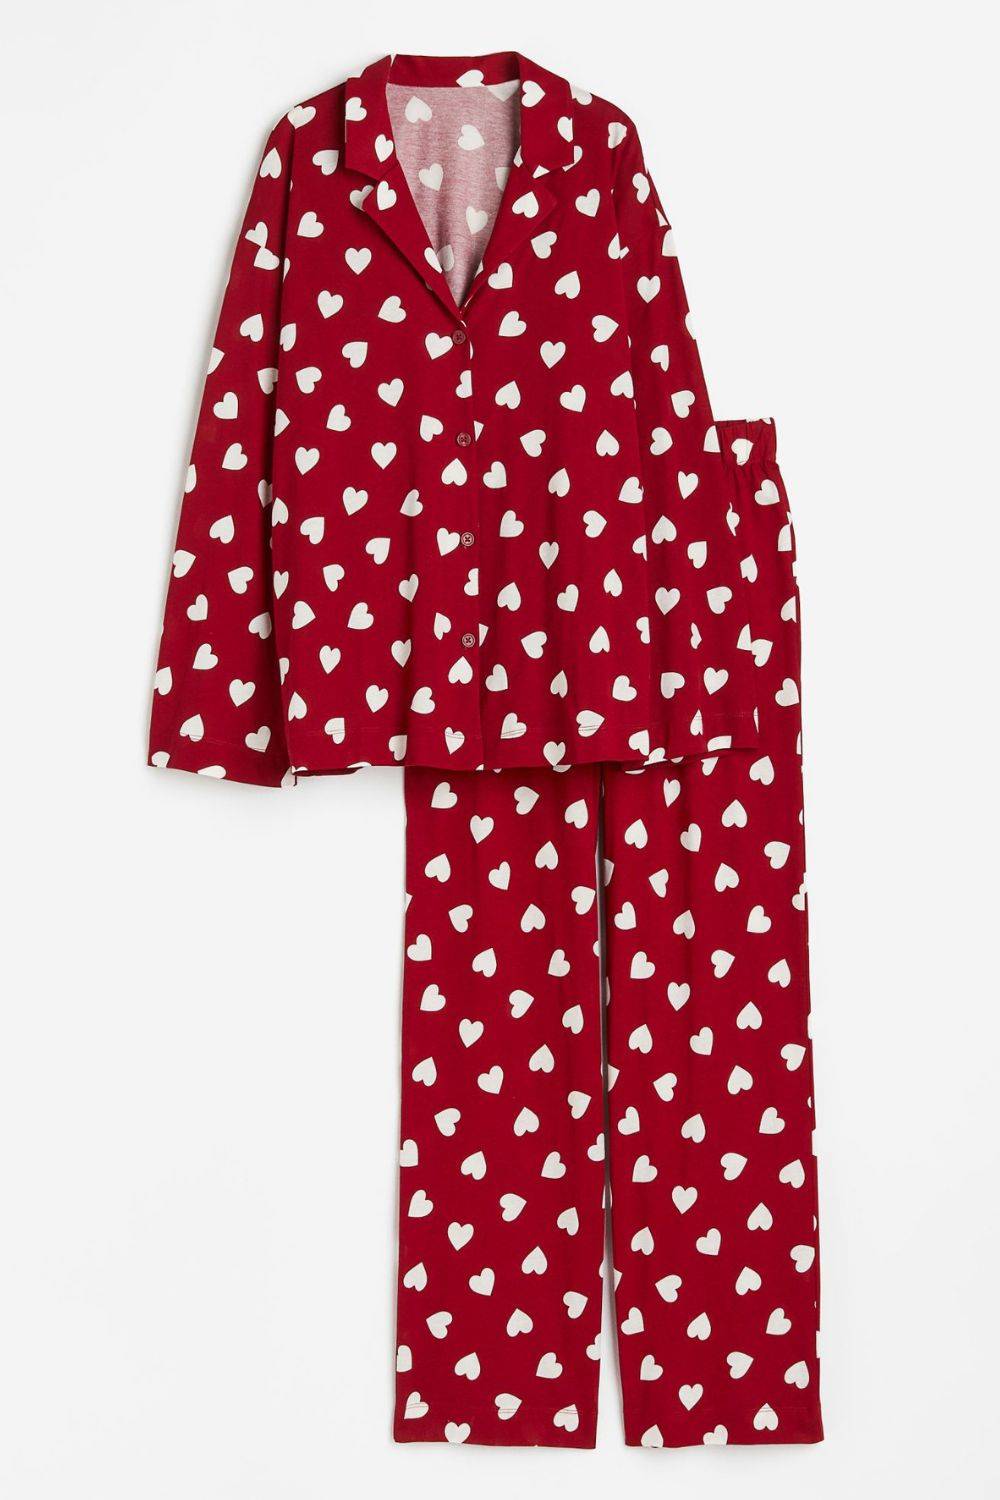 Romantyczna piżama świąteczna, H&M 127,99 zł (Fot. materiały prasowe)